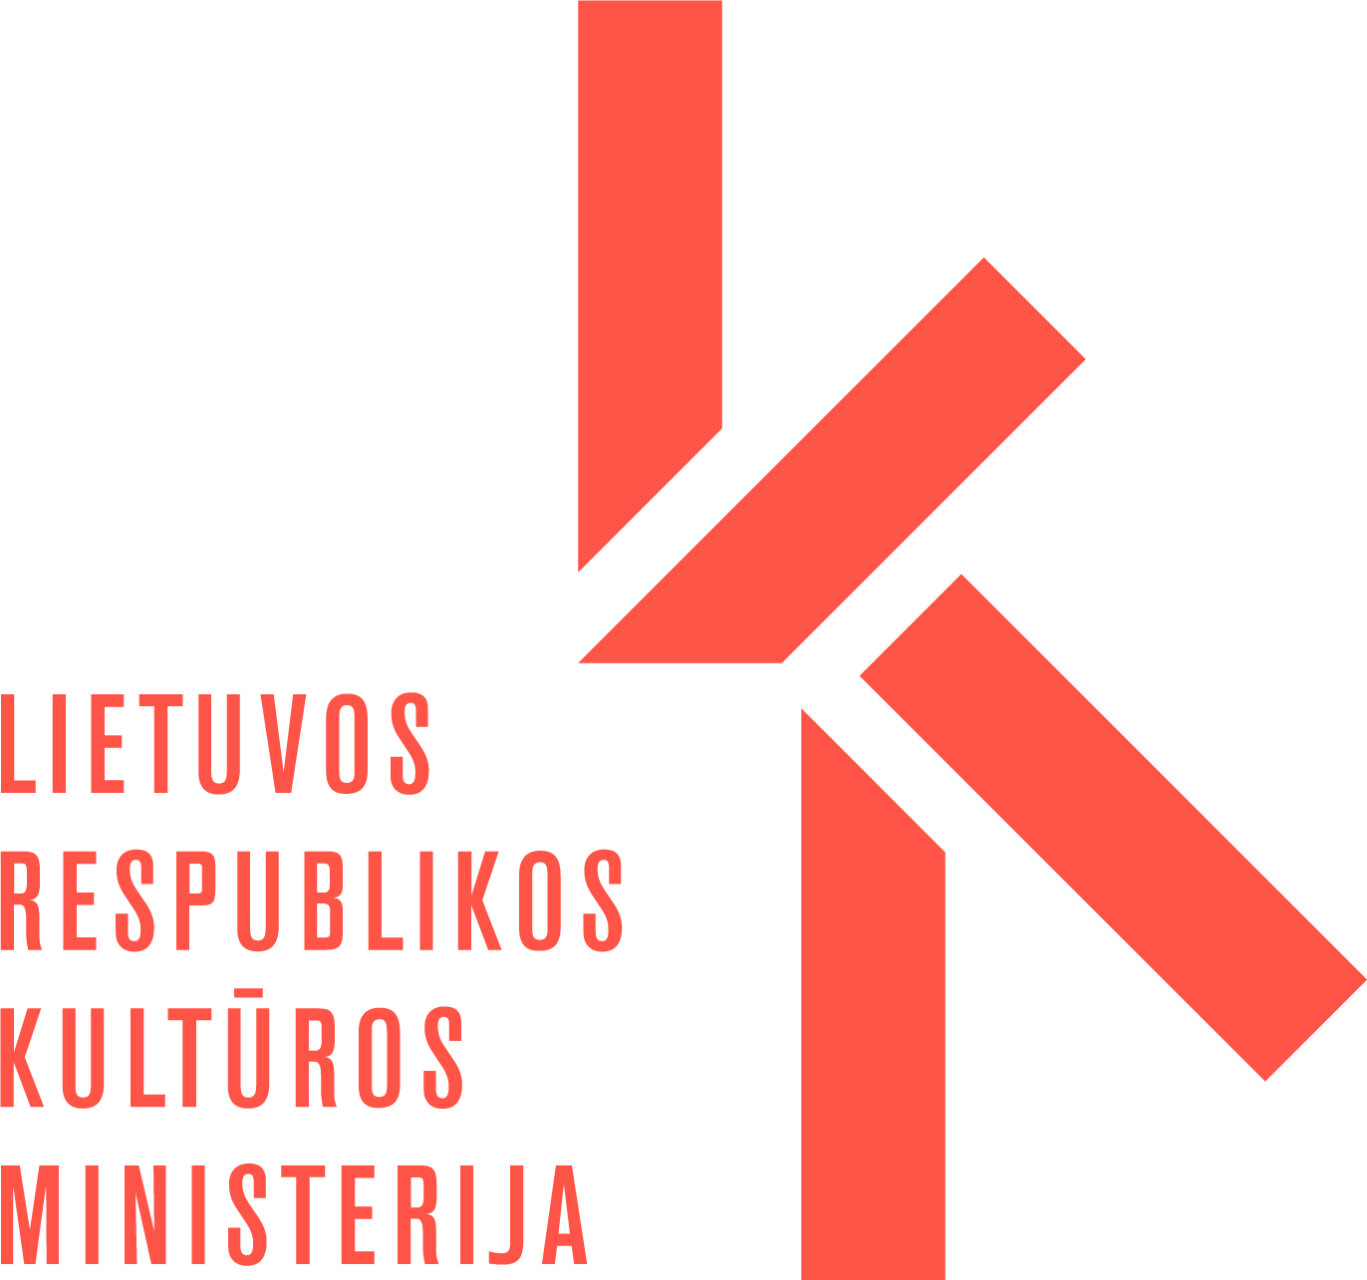 Lietuvos Respublikos kultūros ministerija